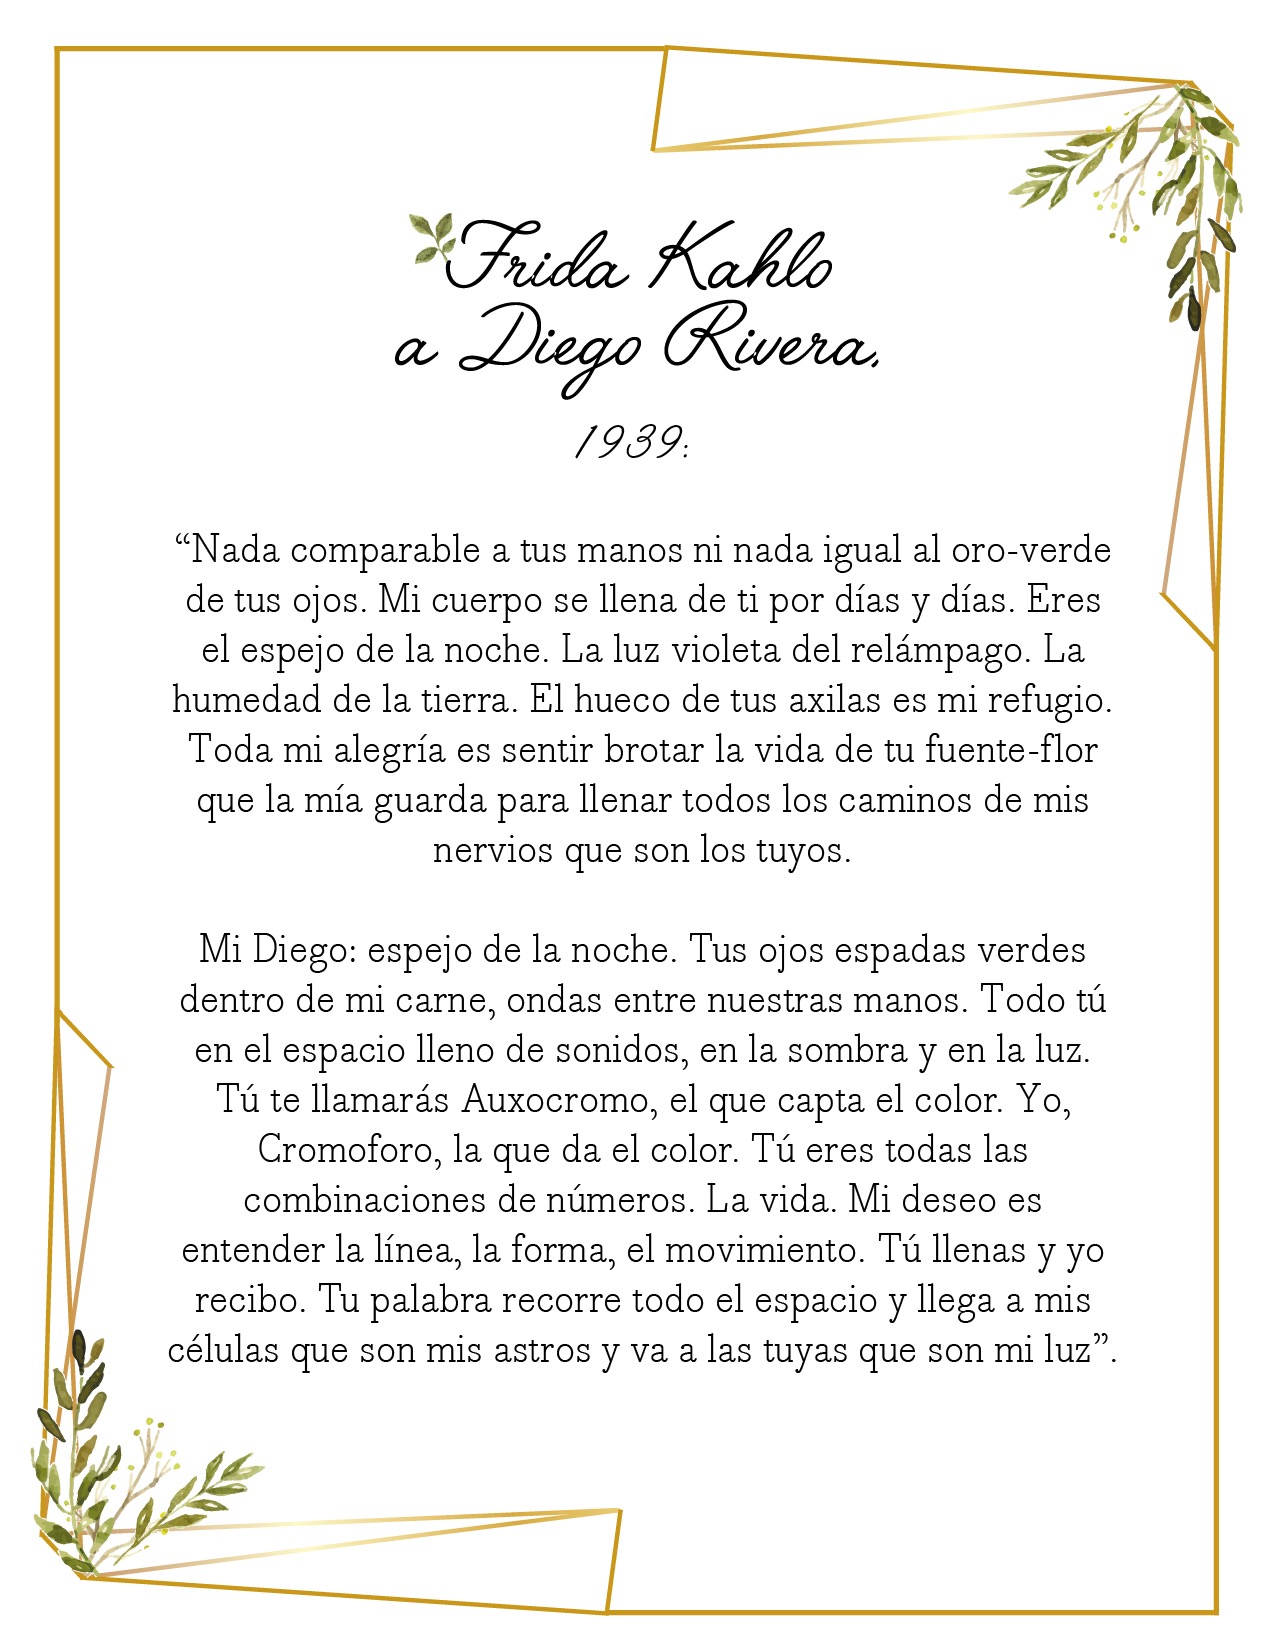 Cartas de amor - Frida Kahlo a Diego Rivera